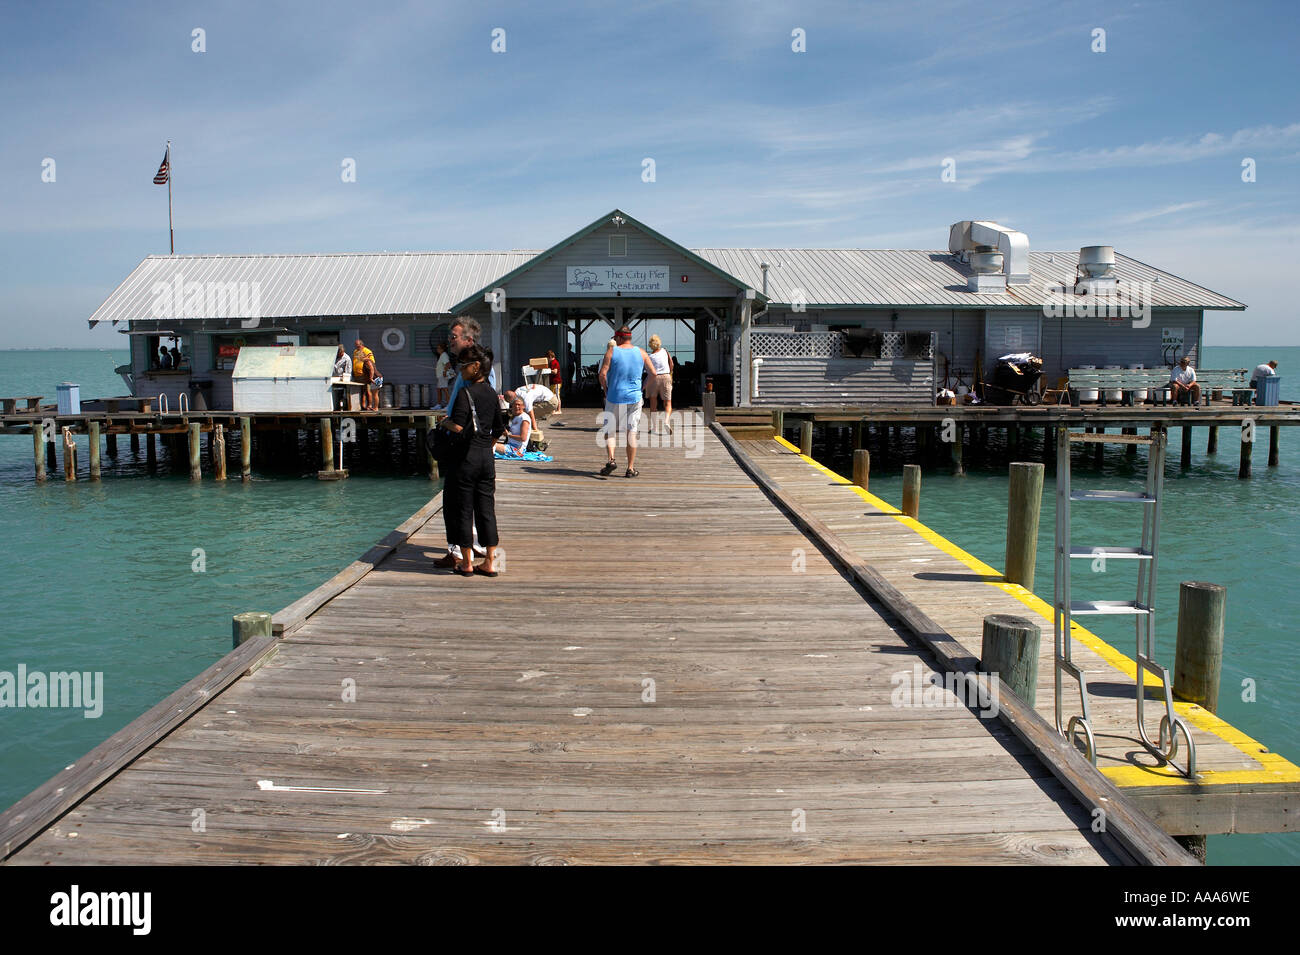 Blick auf das Ende der Stadt Pier Anna Maria Insel Florida Vereinigte Staaten usa Stockfoto